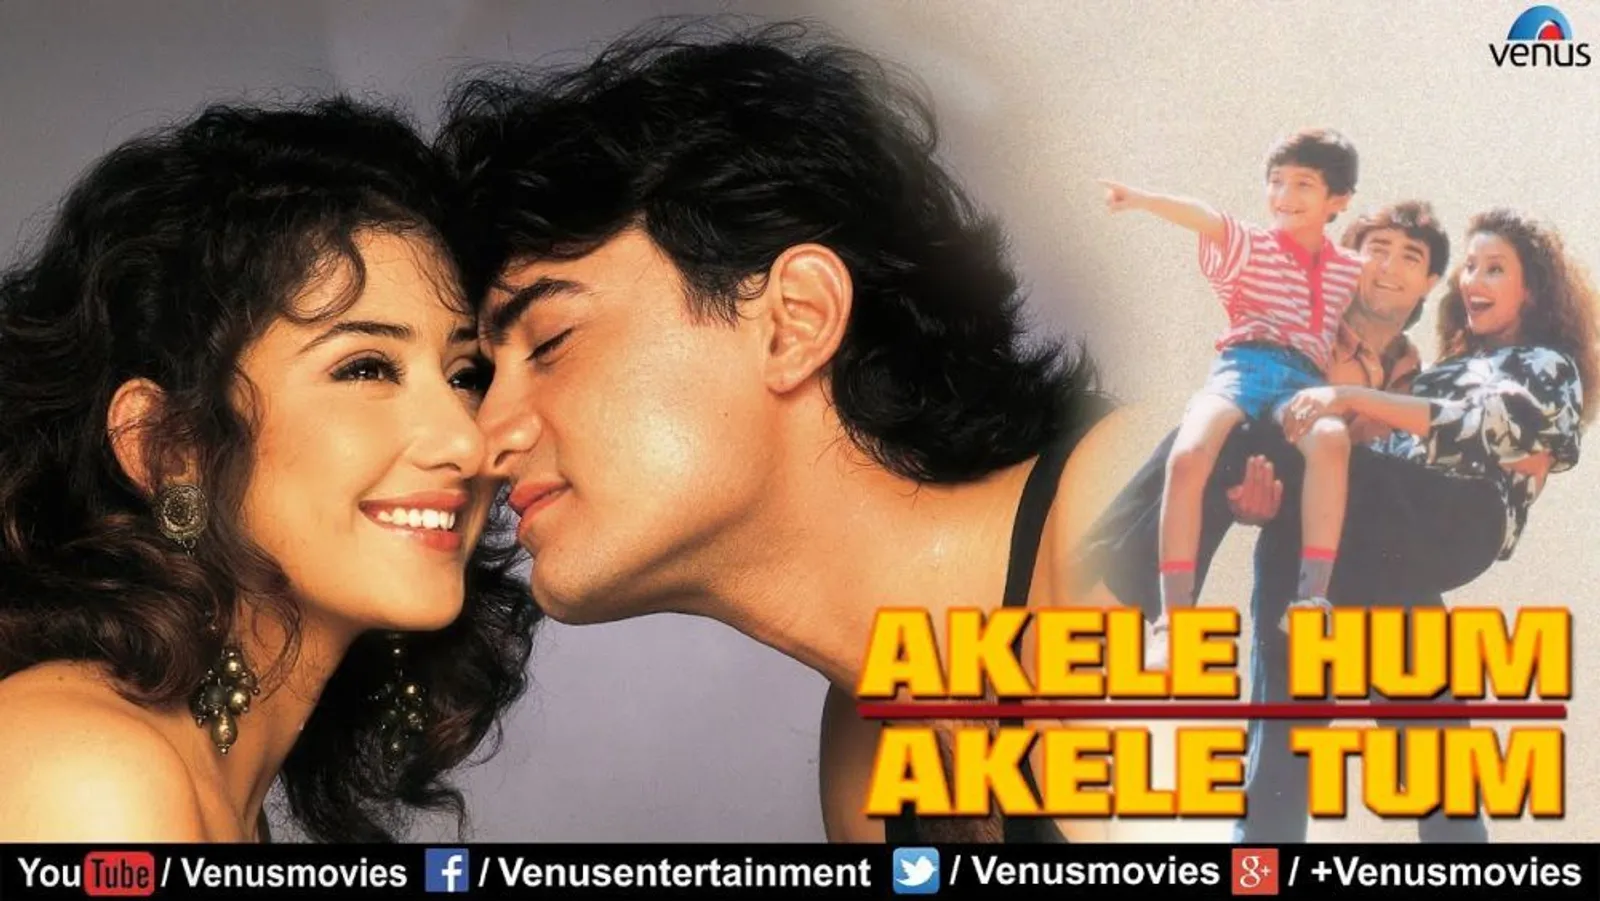 7 Film Bollywood Paling Populer di Tahun 90-an, Mana Favoritmu?